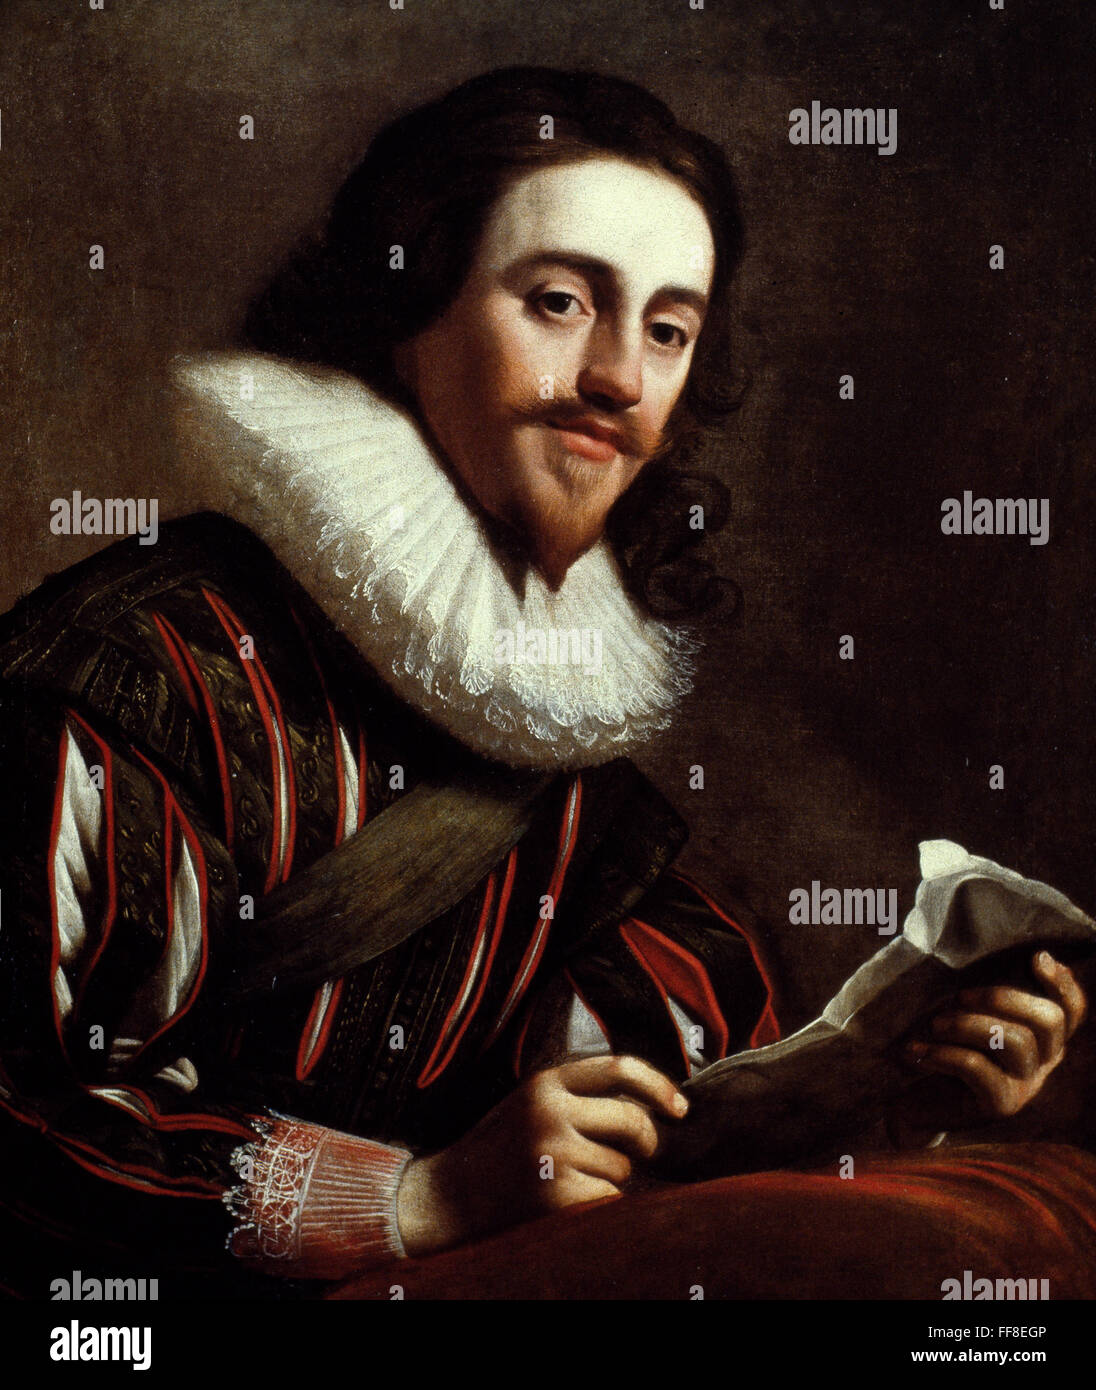 Le roi Charles Ier D'ANGLETERRE /n(1600-1649). Roi d'Angleterre, d'Écosse et d'Irlande, 1625-1649. Huile sur toile, 1628, par Gerrit van Honthorst. Banque D'Images